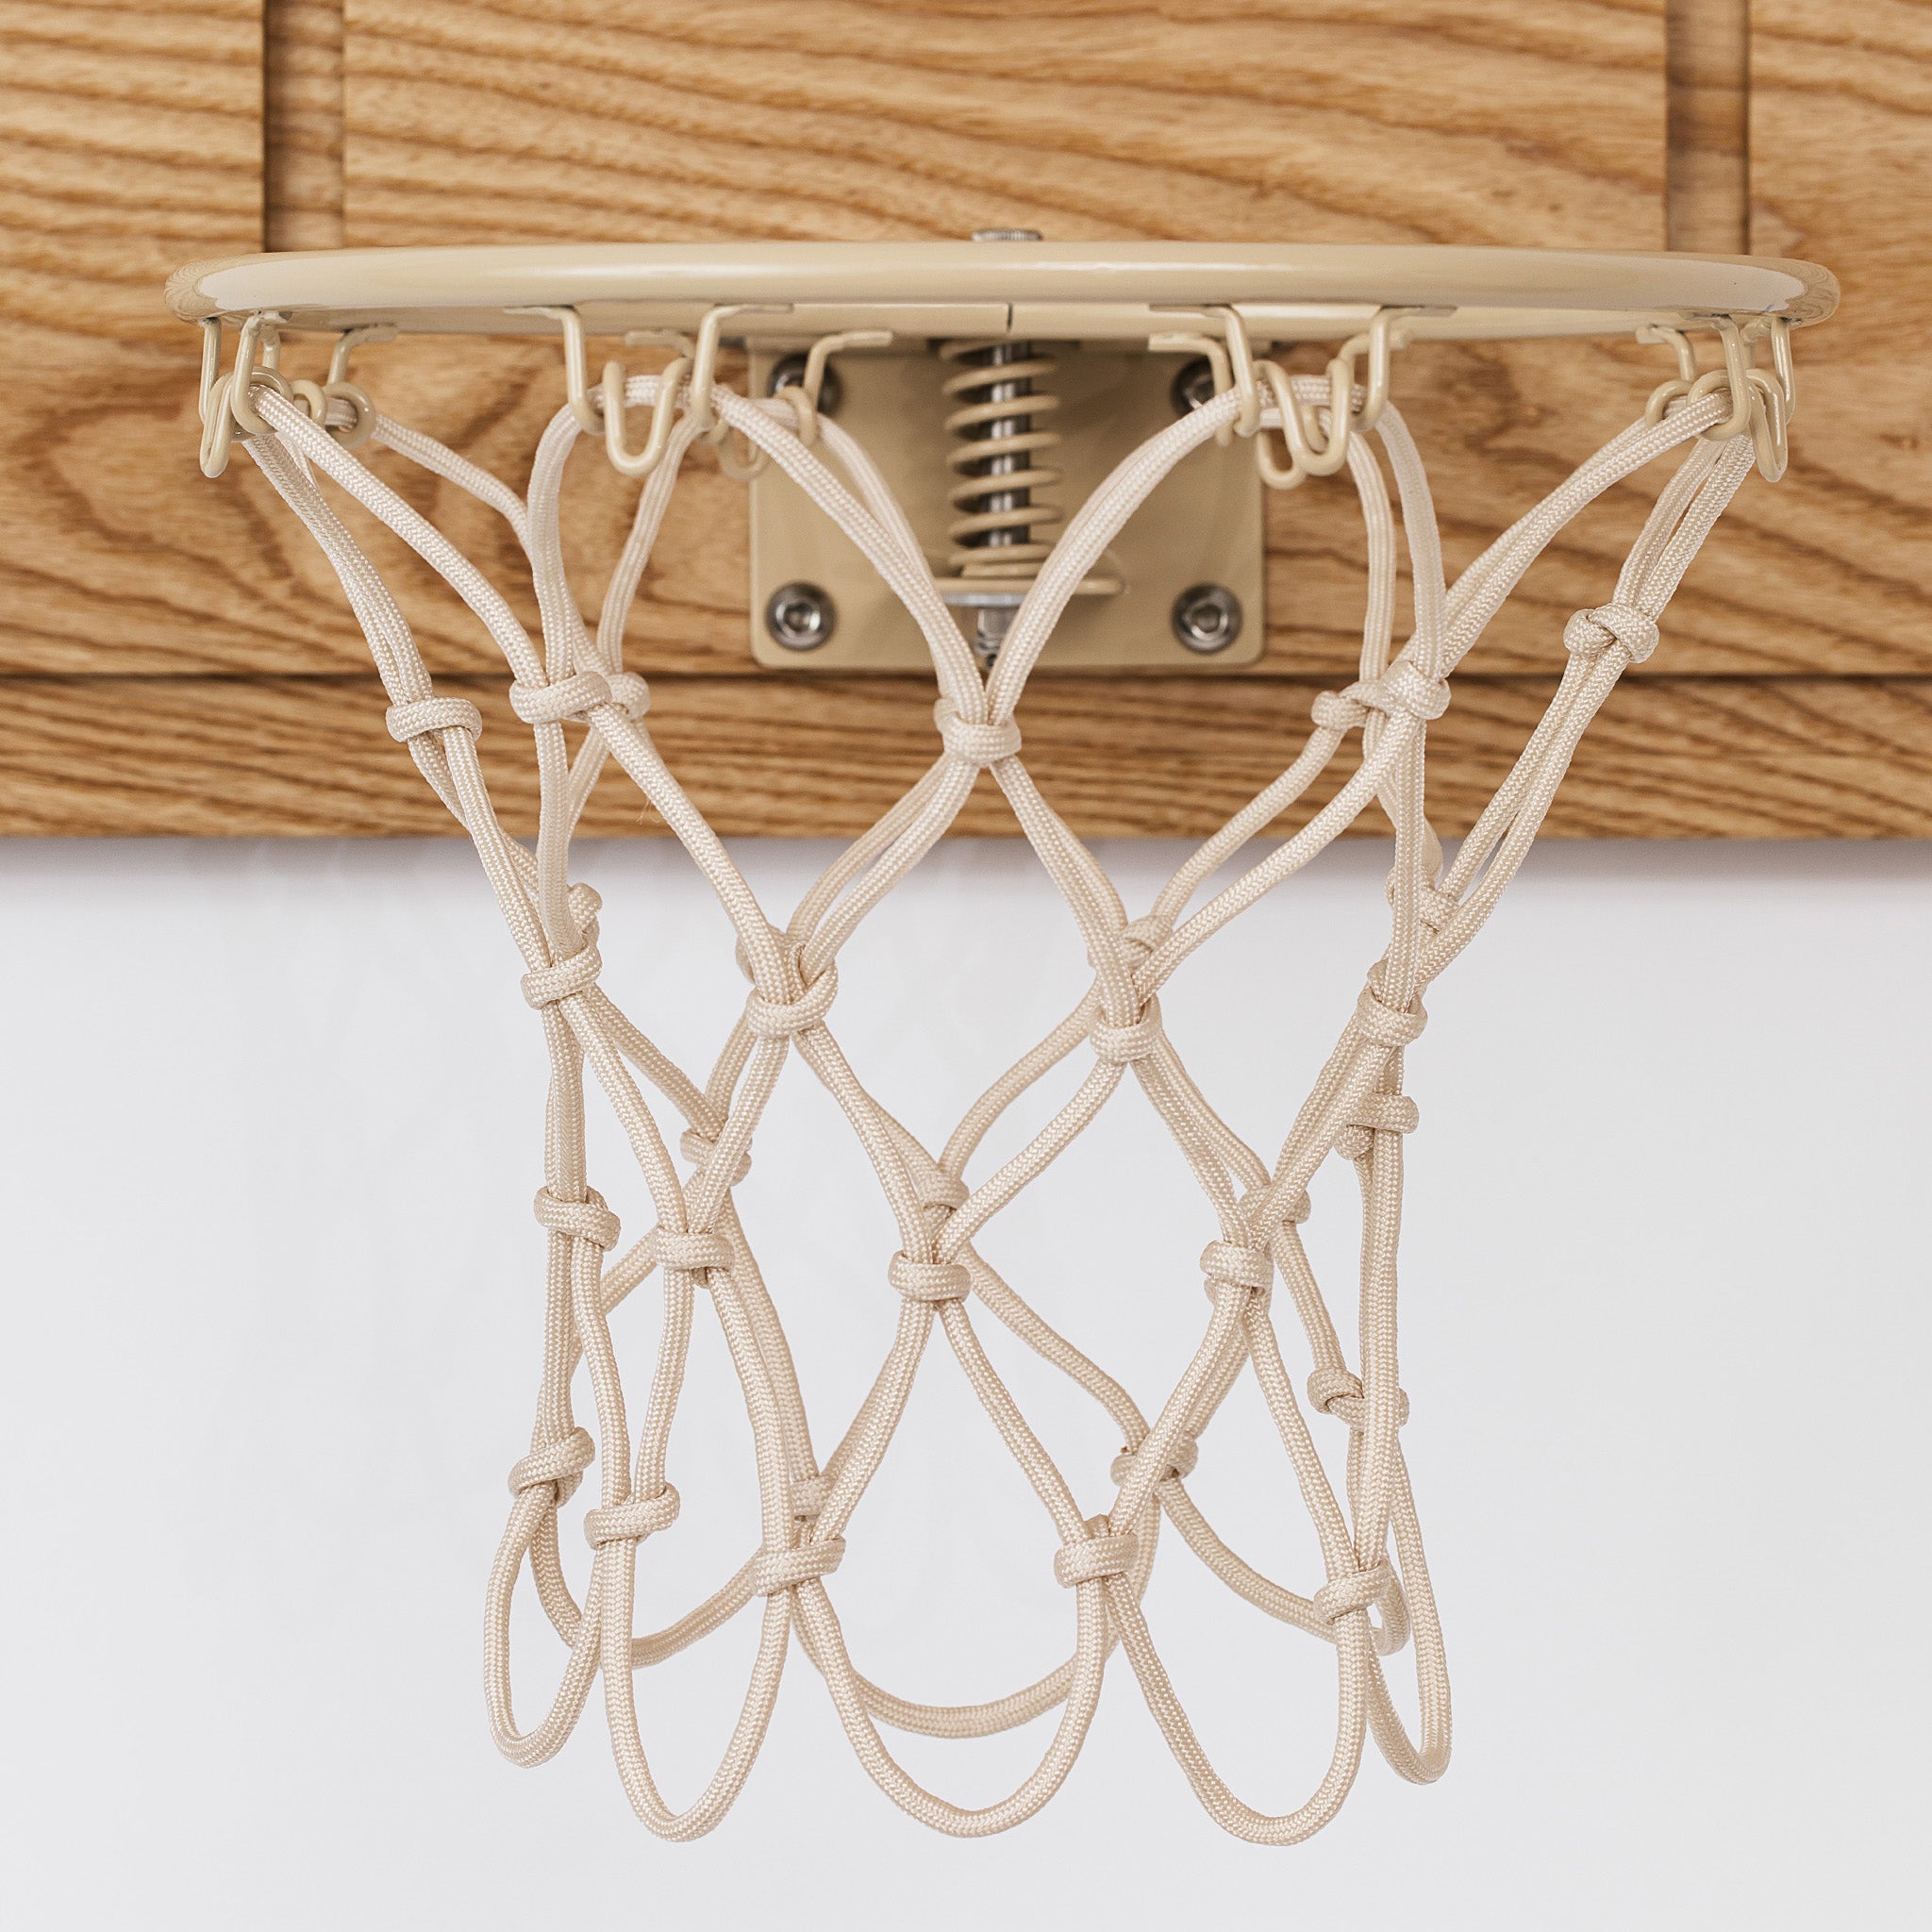 Handmade basketball net mesh on cream powder coated breakaway rim -ash